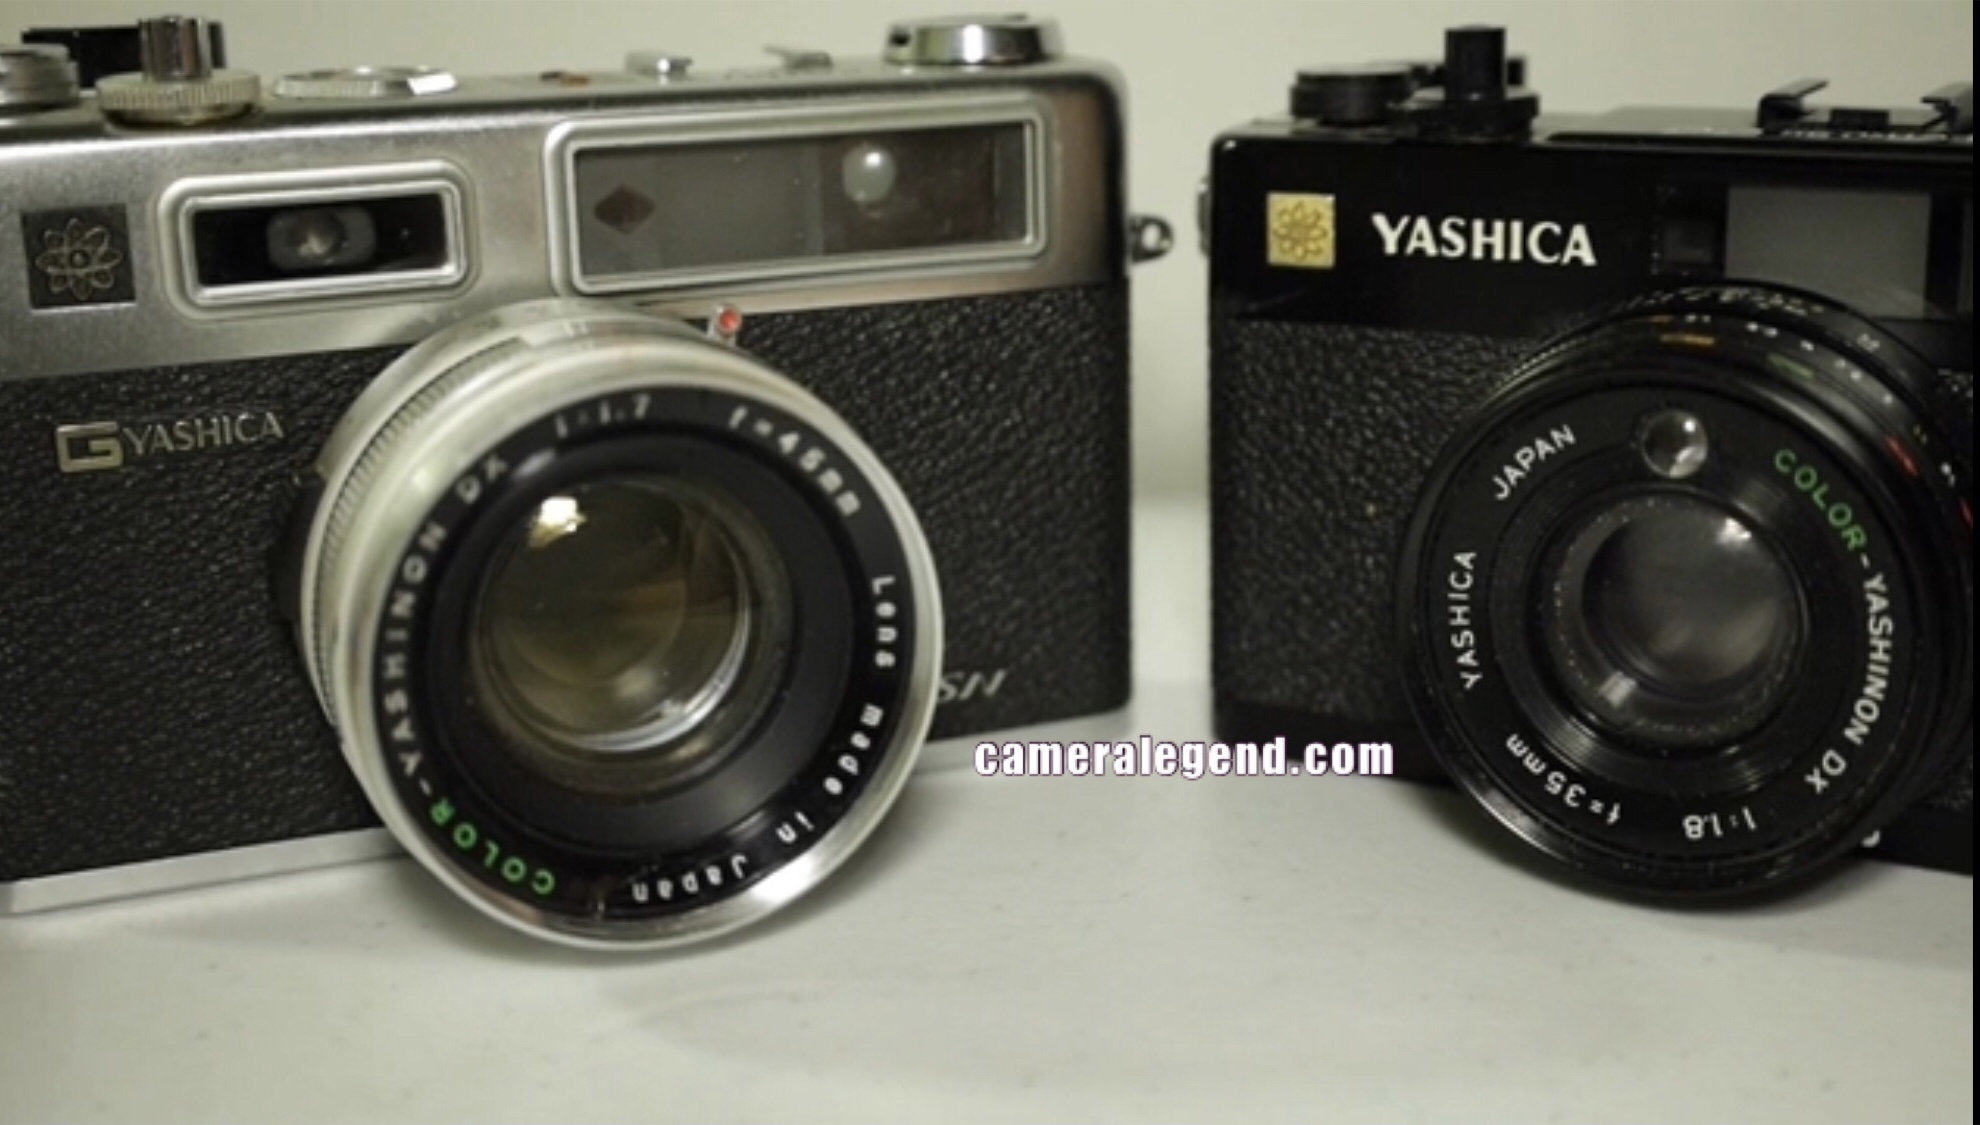 The Yashica 35CC Review – Camera Legend